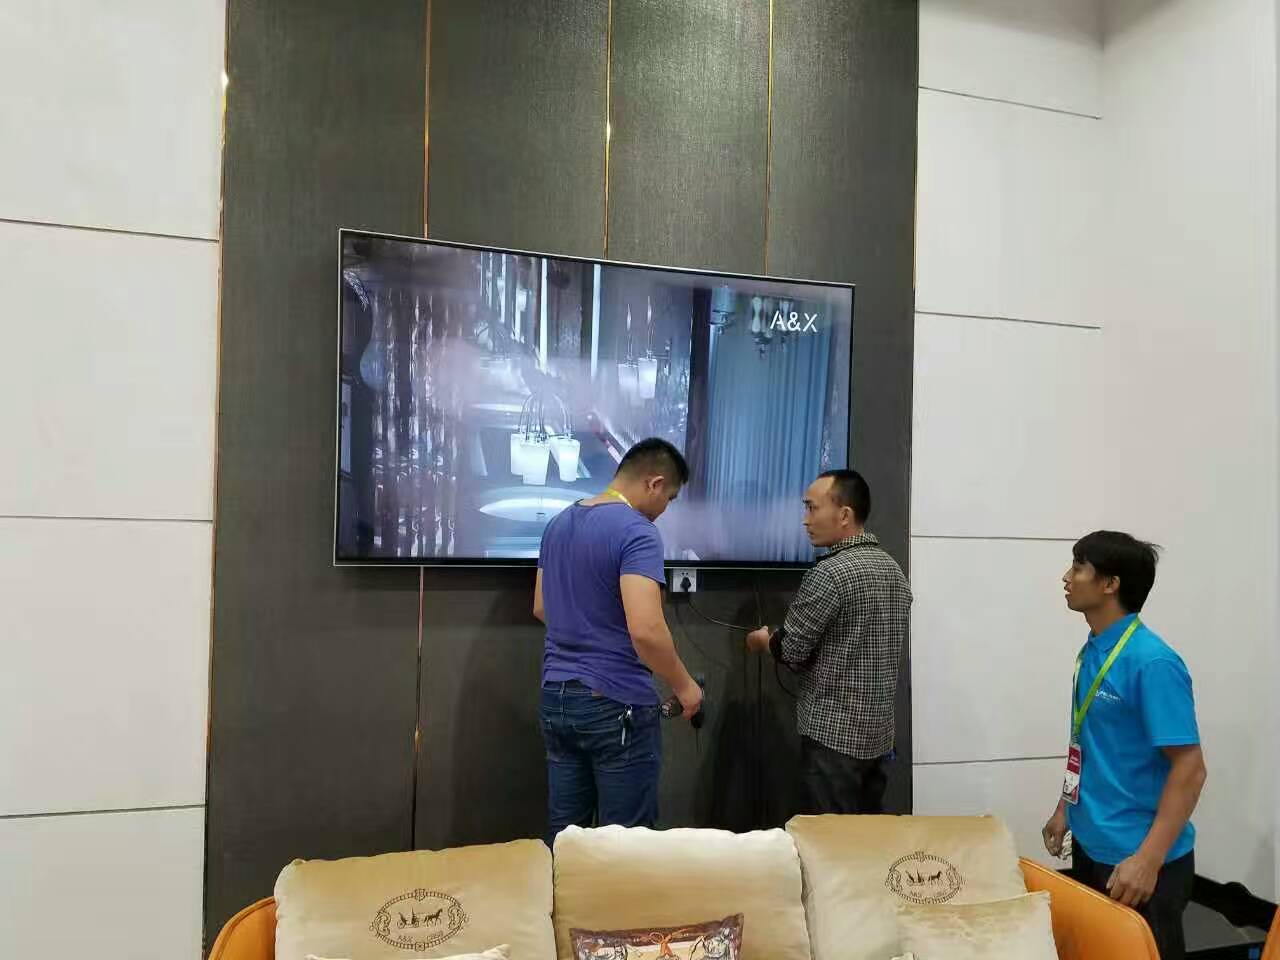 上海液晶显示器出租公司 电视租赁 A股上市演艺设备租赁